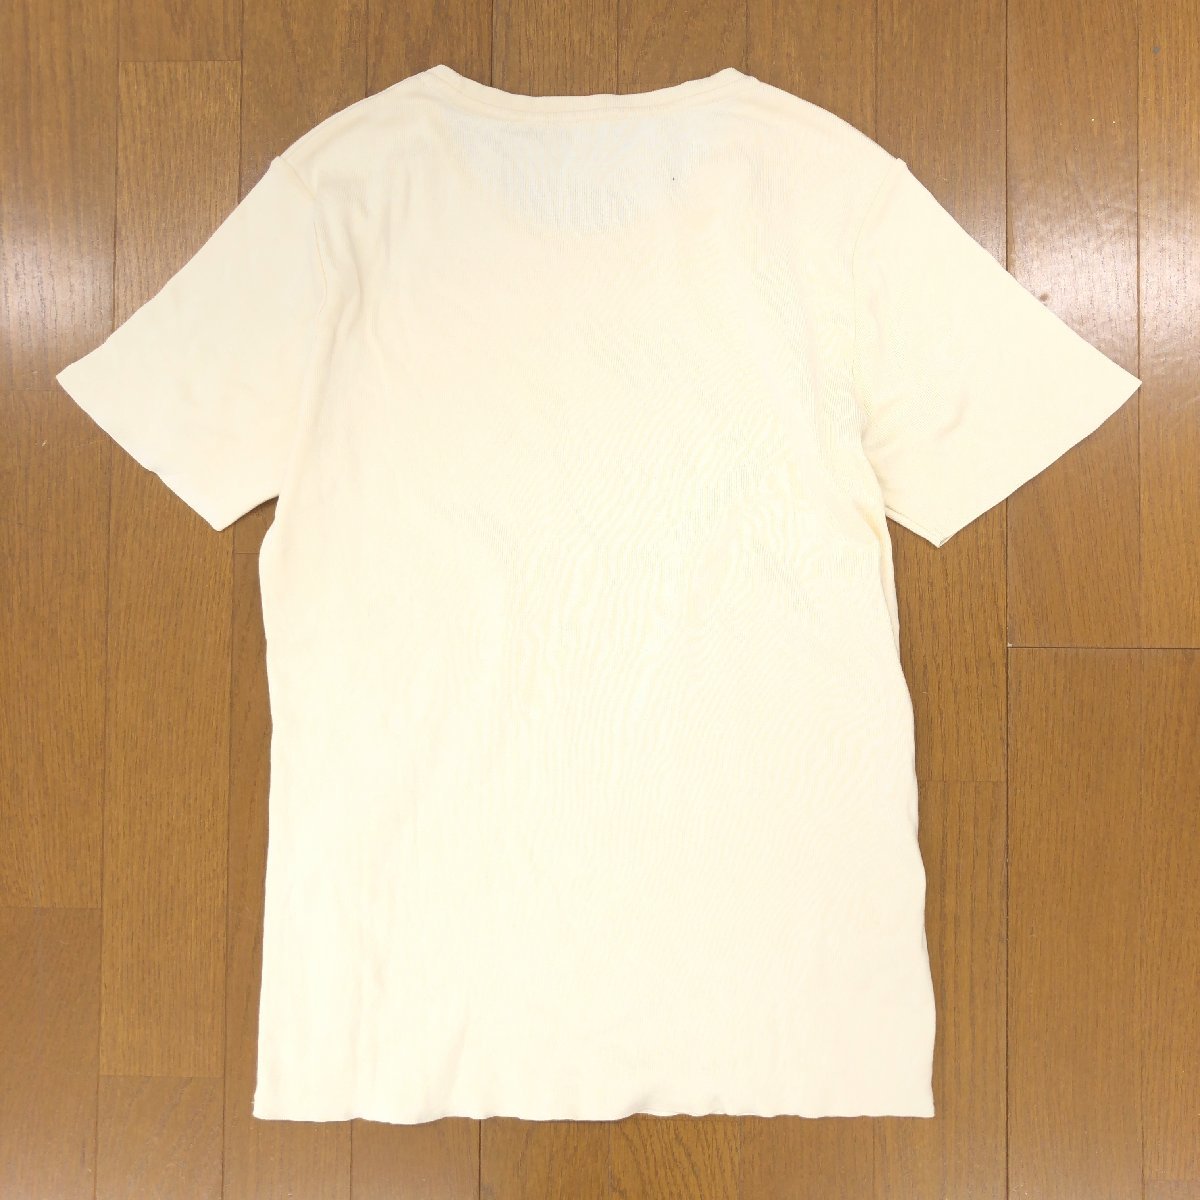 RALPH LAUREN ラルフローレン コットン カットソー 5f(L相当) アイボリー 半袖 Tシャツ 国内正規品 レディース 女性用 婦人の画像2